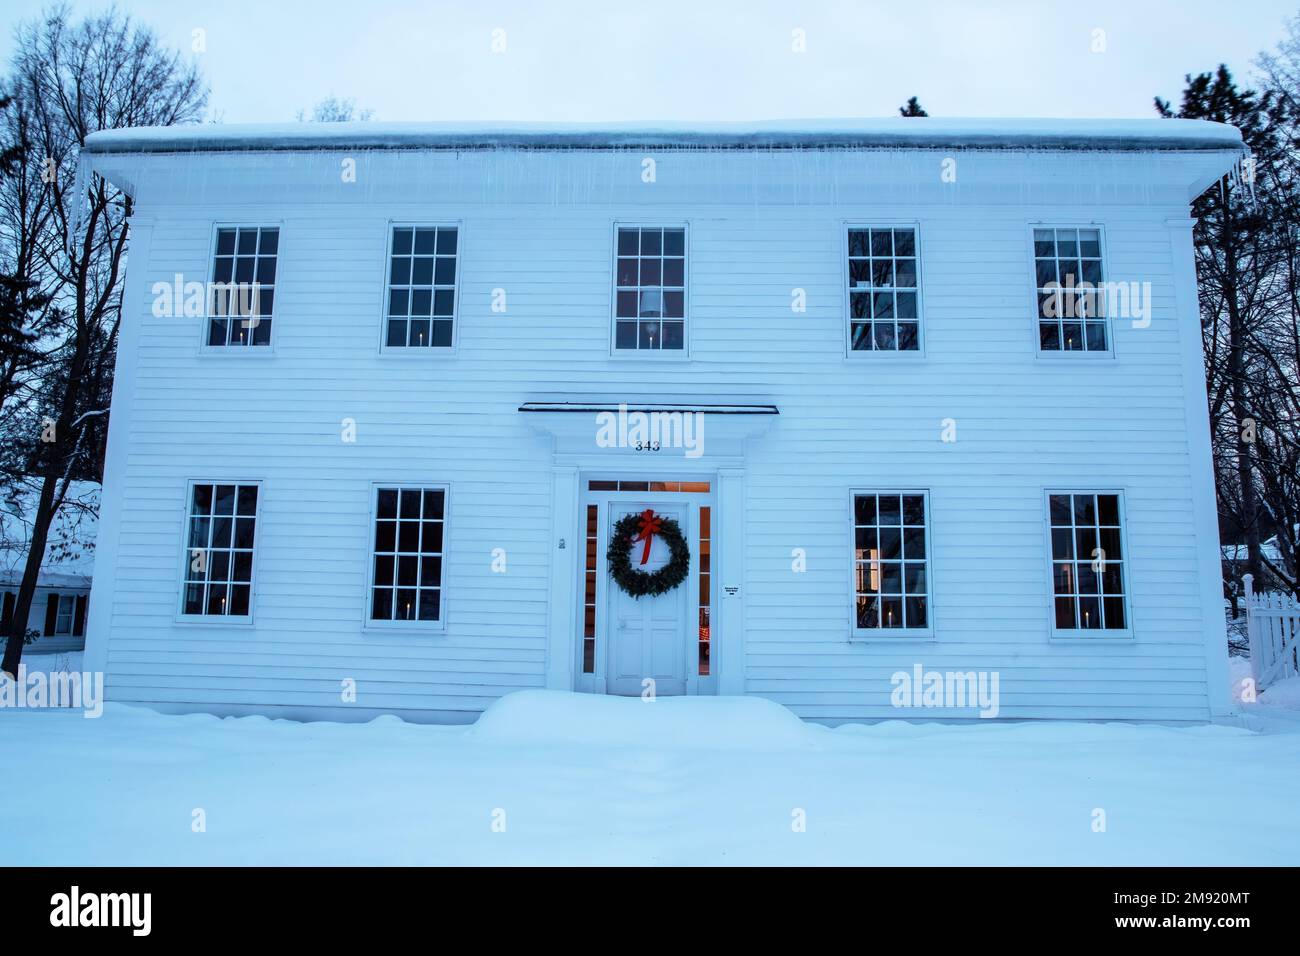 McKusick House wurde um 1846 erbaut, 1969 aus Stillwater, MN, umgezogen, zu Weihnachten mit einem Kranz dekoriert; aufgenommen im blauen Licht eines Winterabends. Stockfoto